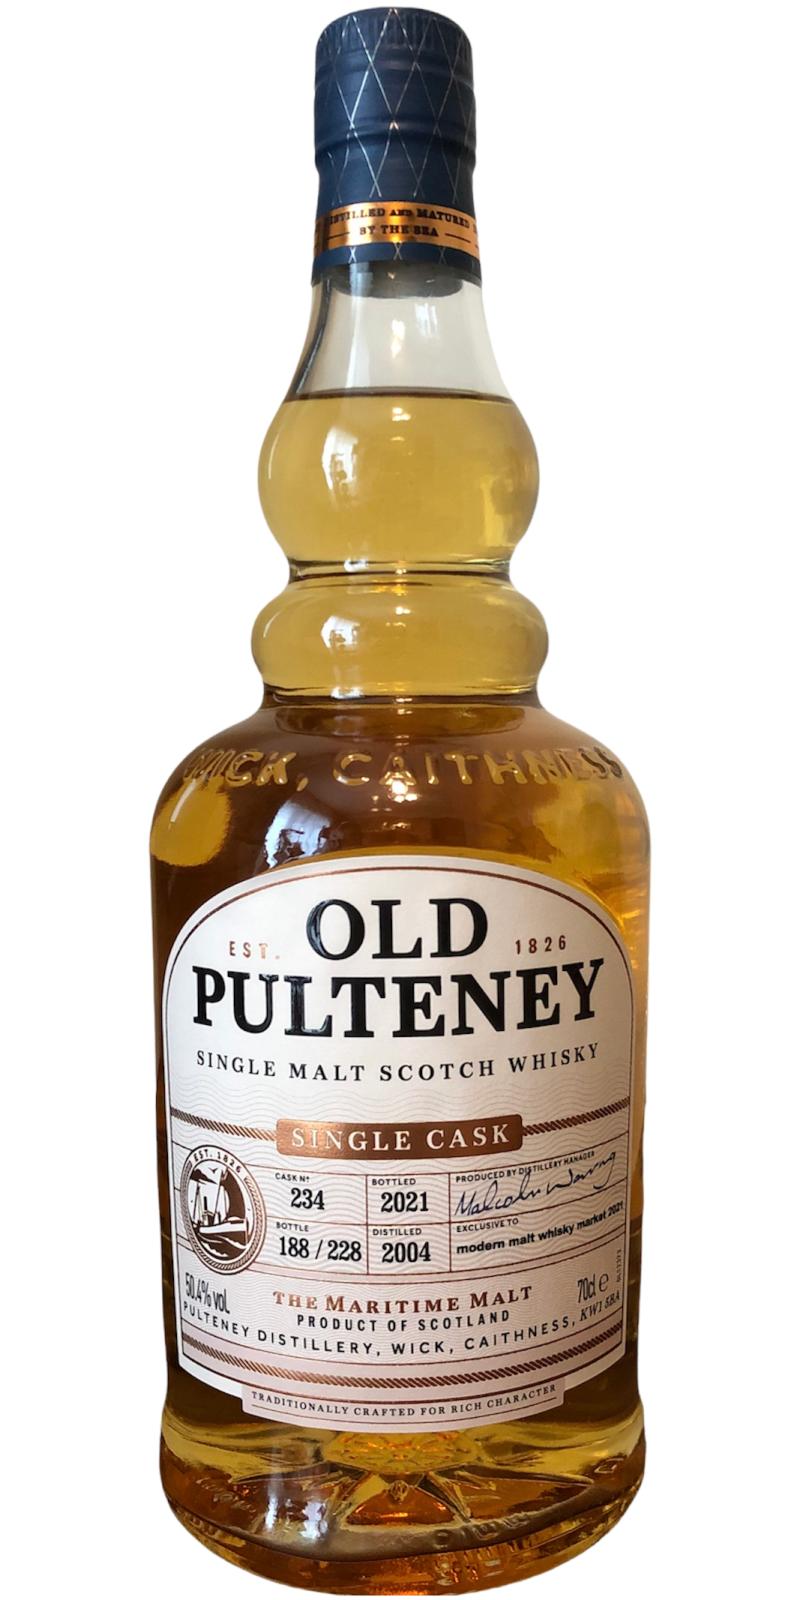 Old Pulteney 2004 Modern malt whisky market 2021 50.4% 700ml